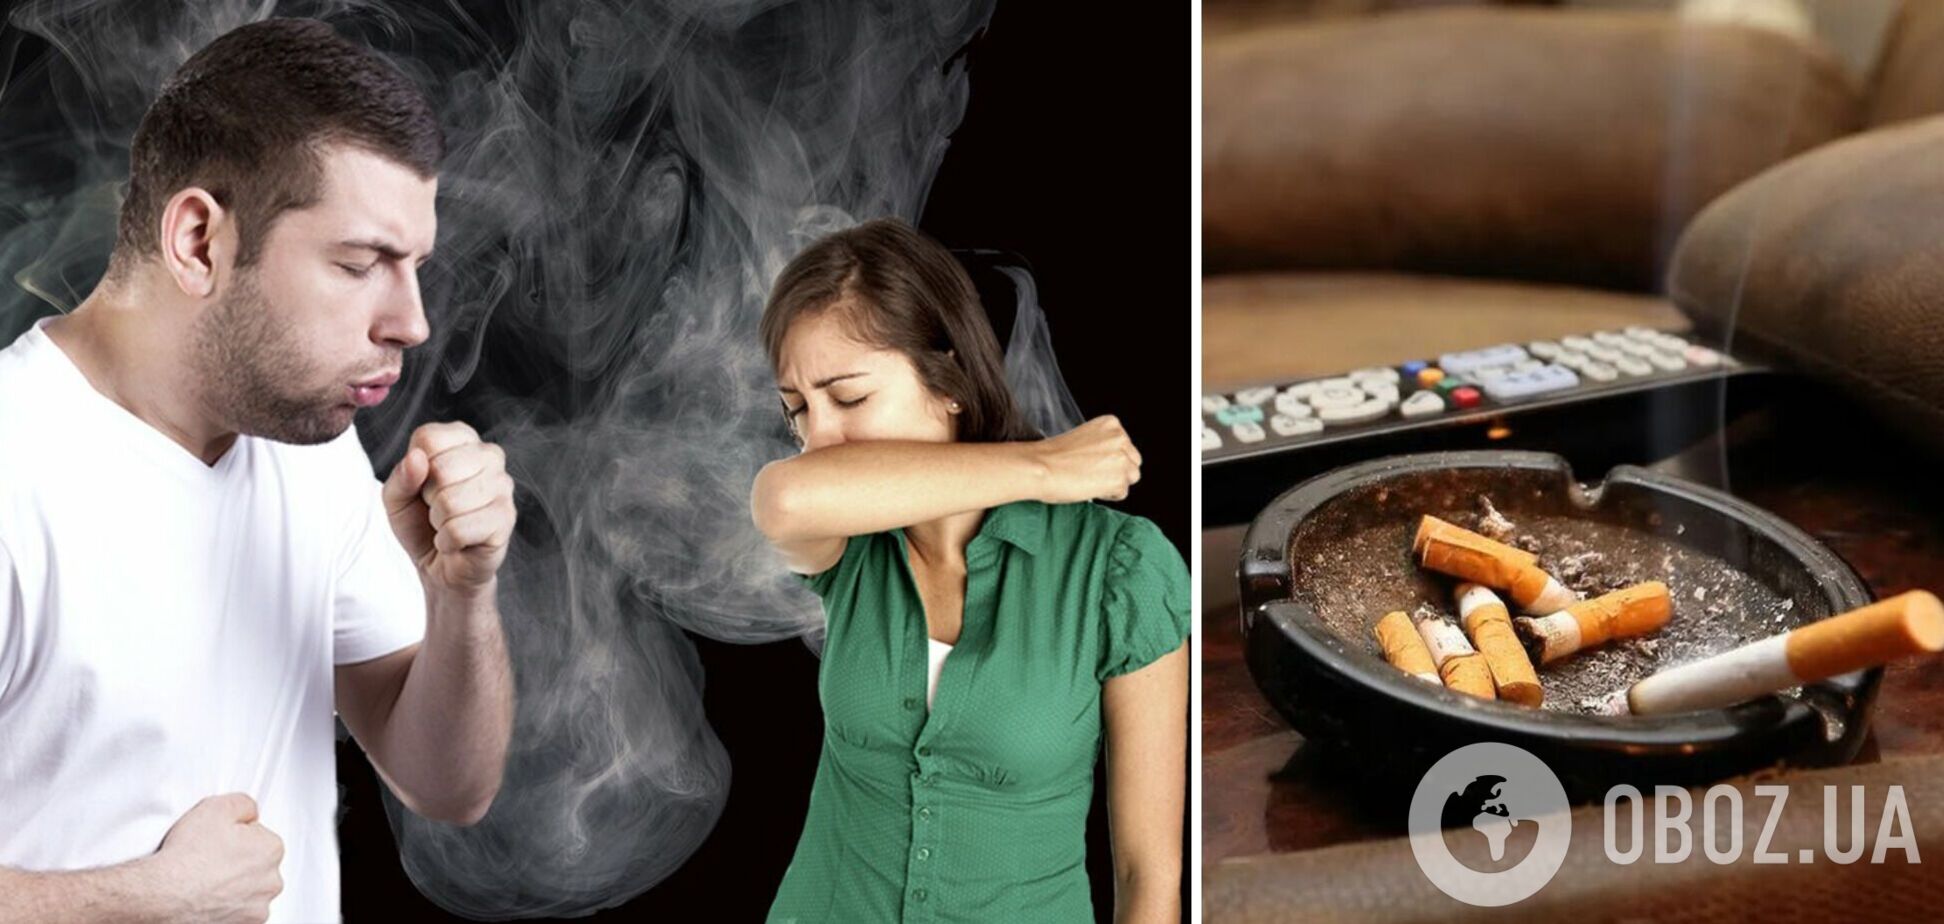 Как избавиться от запаха сигарет дома: действенные способы